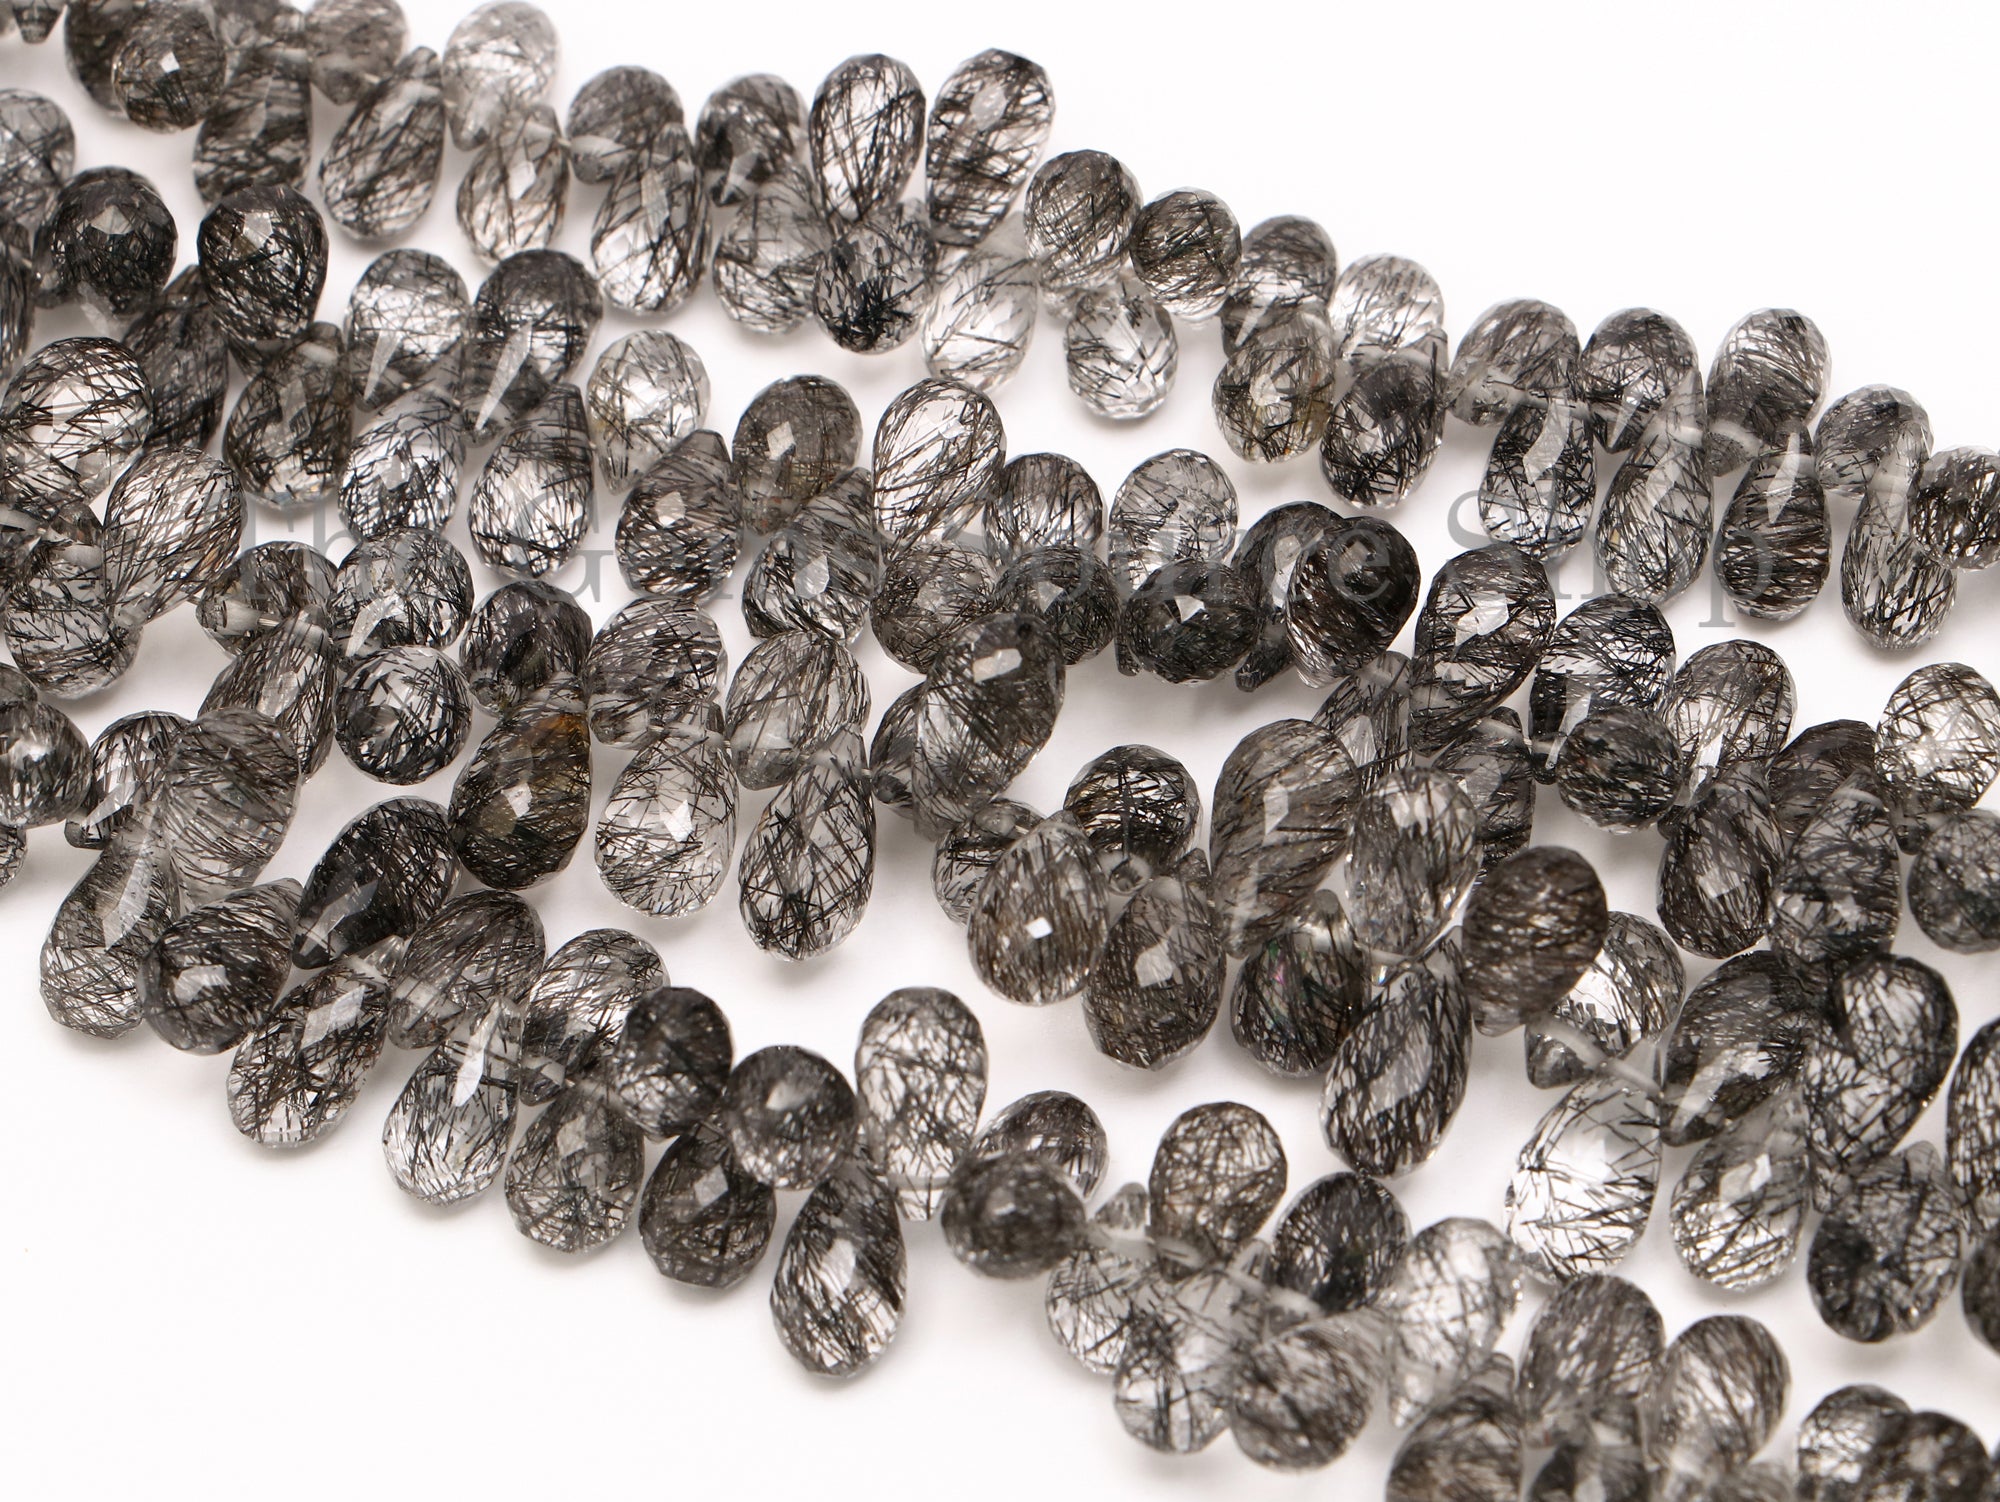 Black Rutile Beads, Black Rutile Drops Shape Beads, Black Rutile Faceted Beads, Black Rutile Gemstone Beads